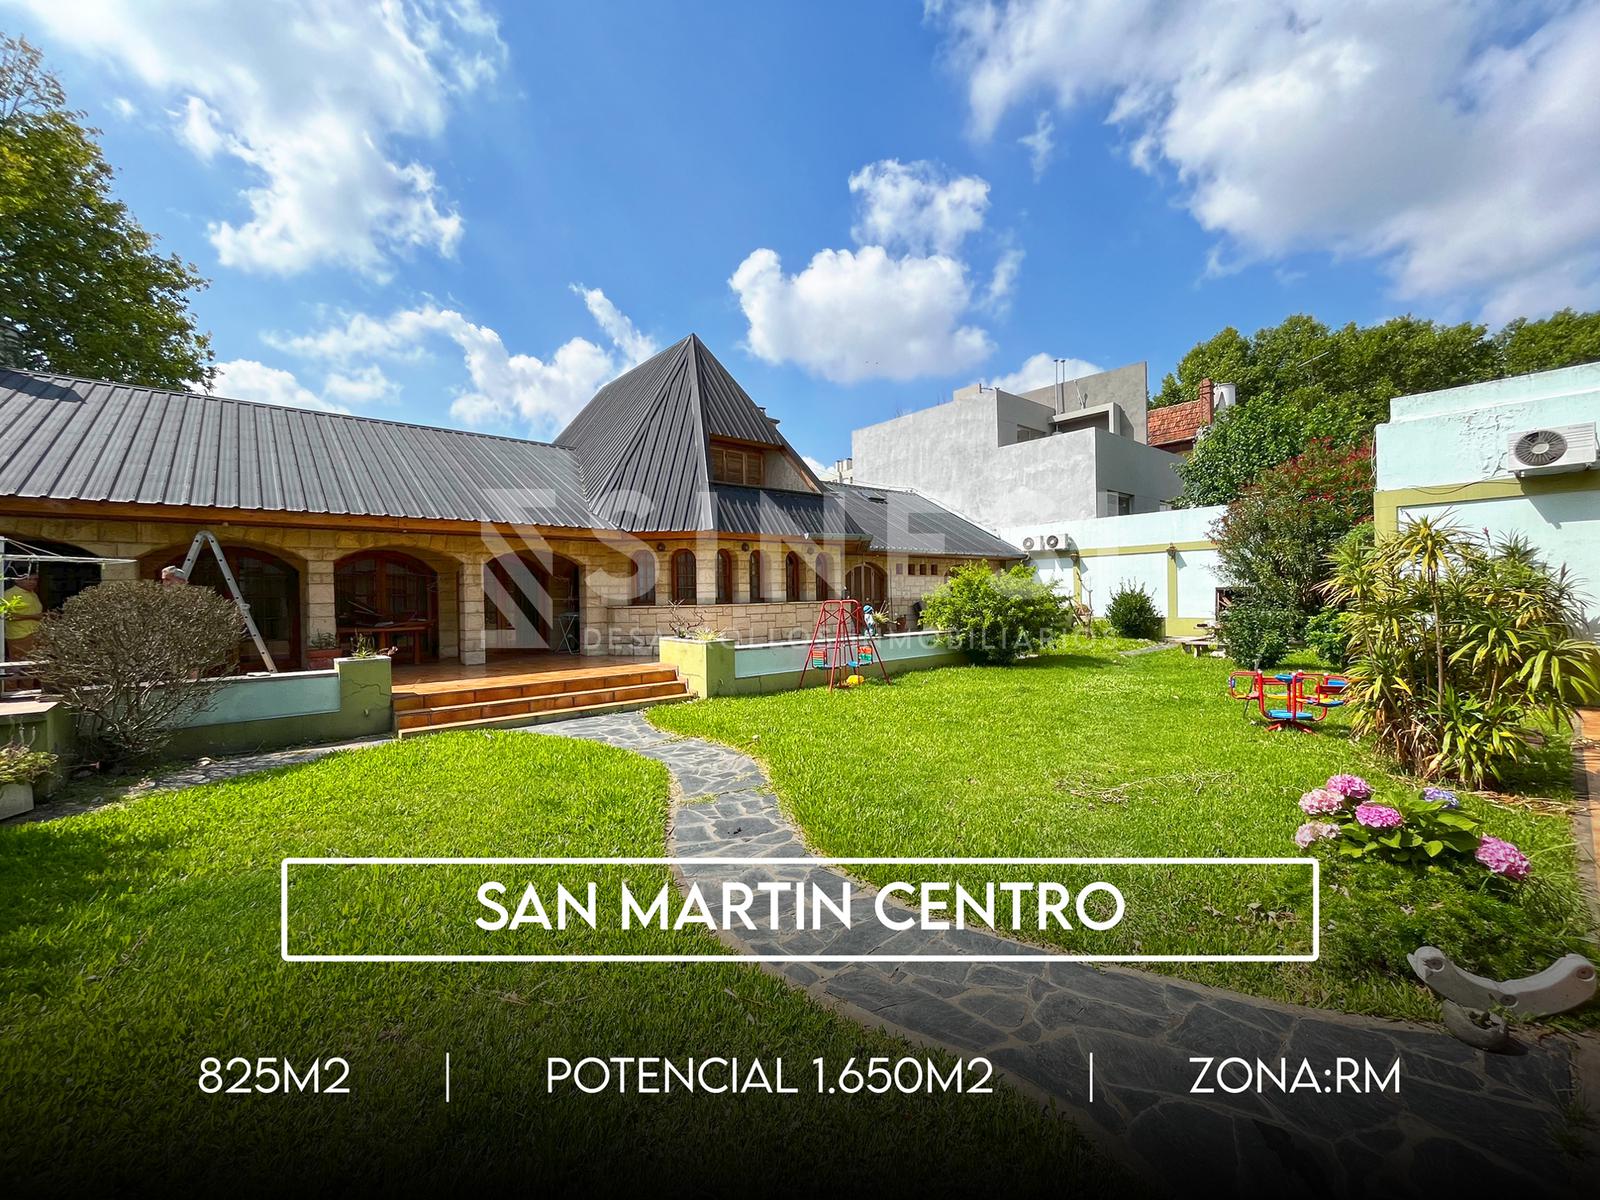 San Martin Centro - 1650m2 potenciales